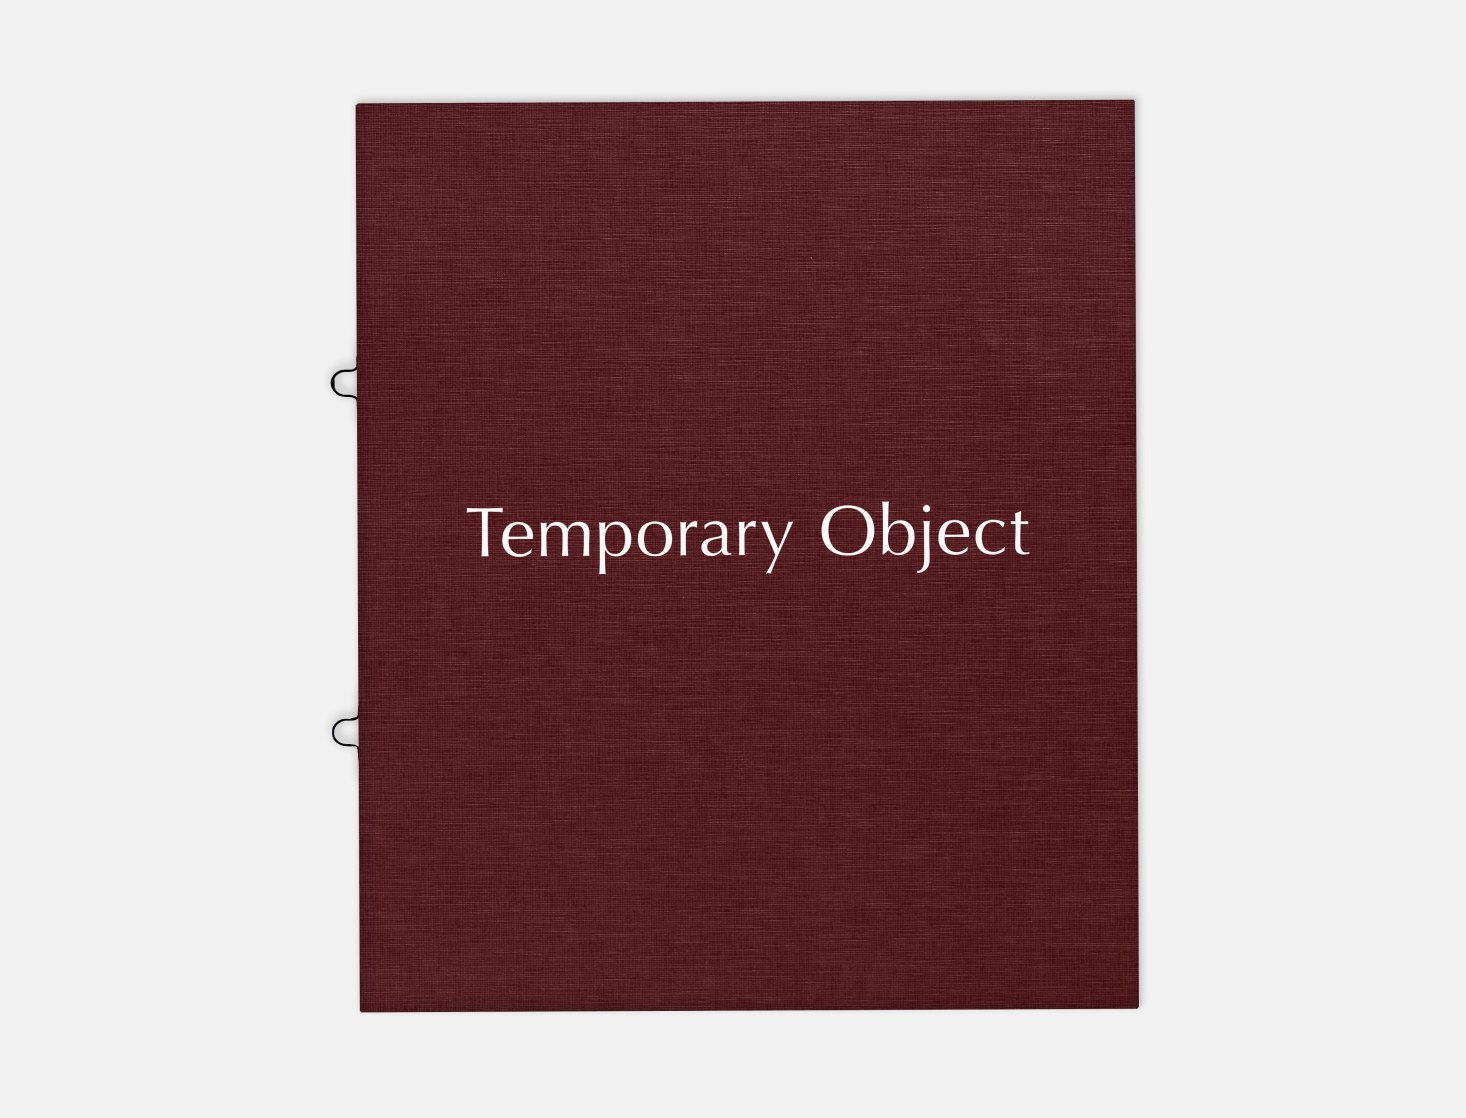 Amy Sillman: Temporary Object